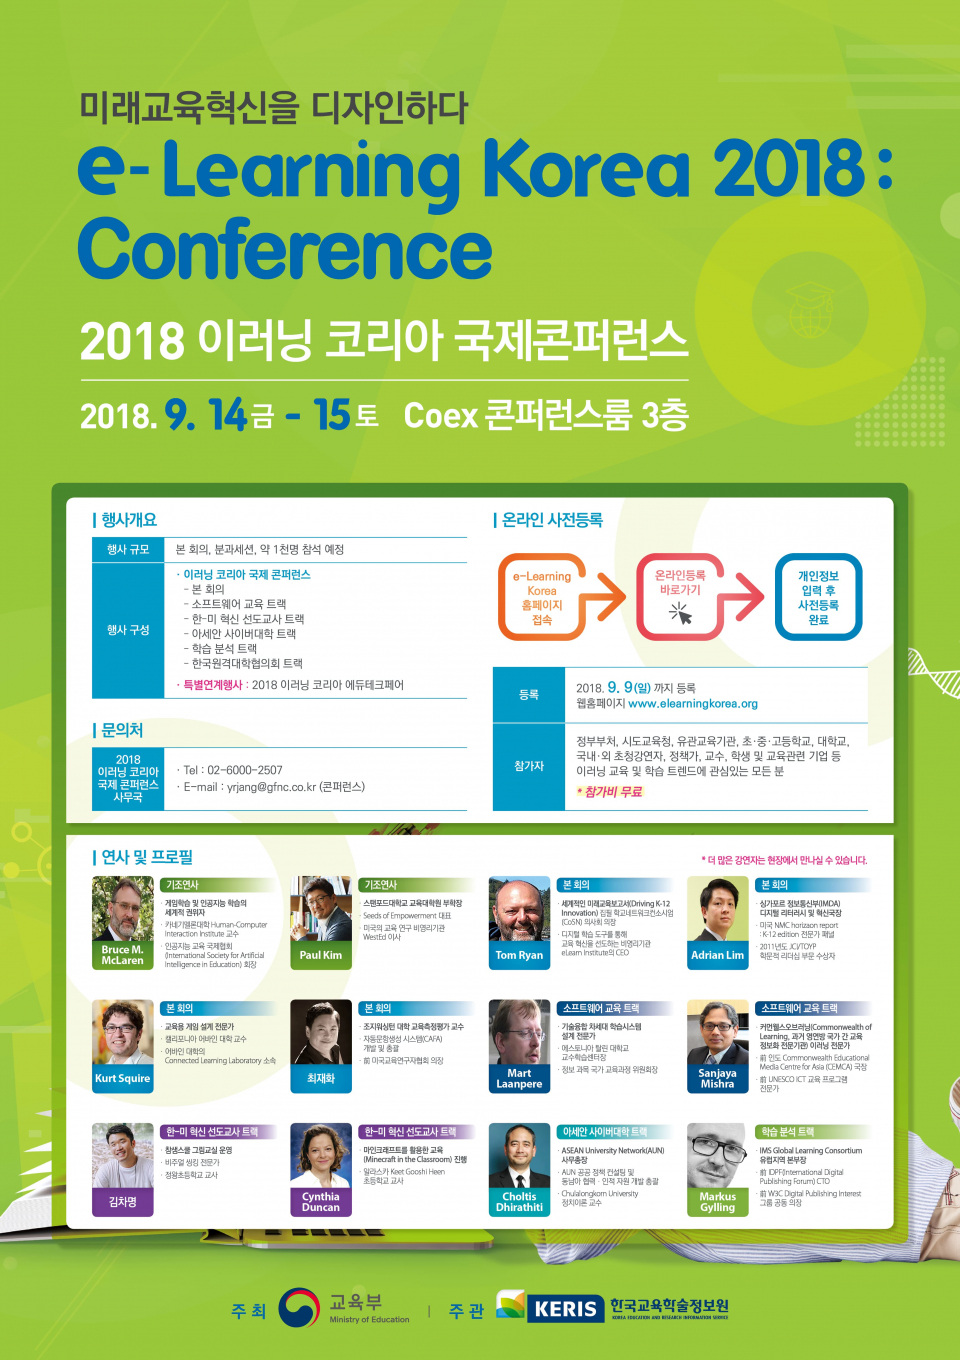 2018 이러닝 코리아 국제 컨퍼런스 및 에듀테크 페어(국제박람회) 개최 안내